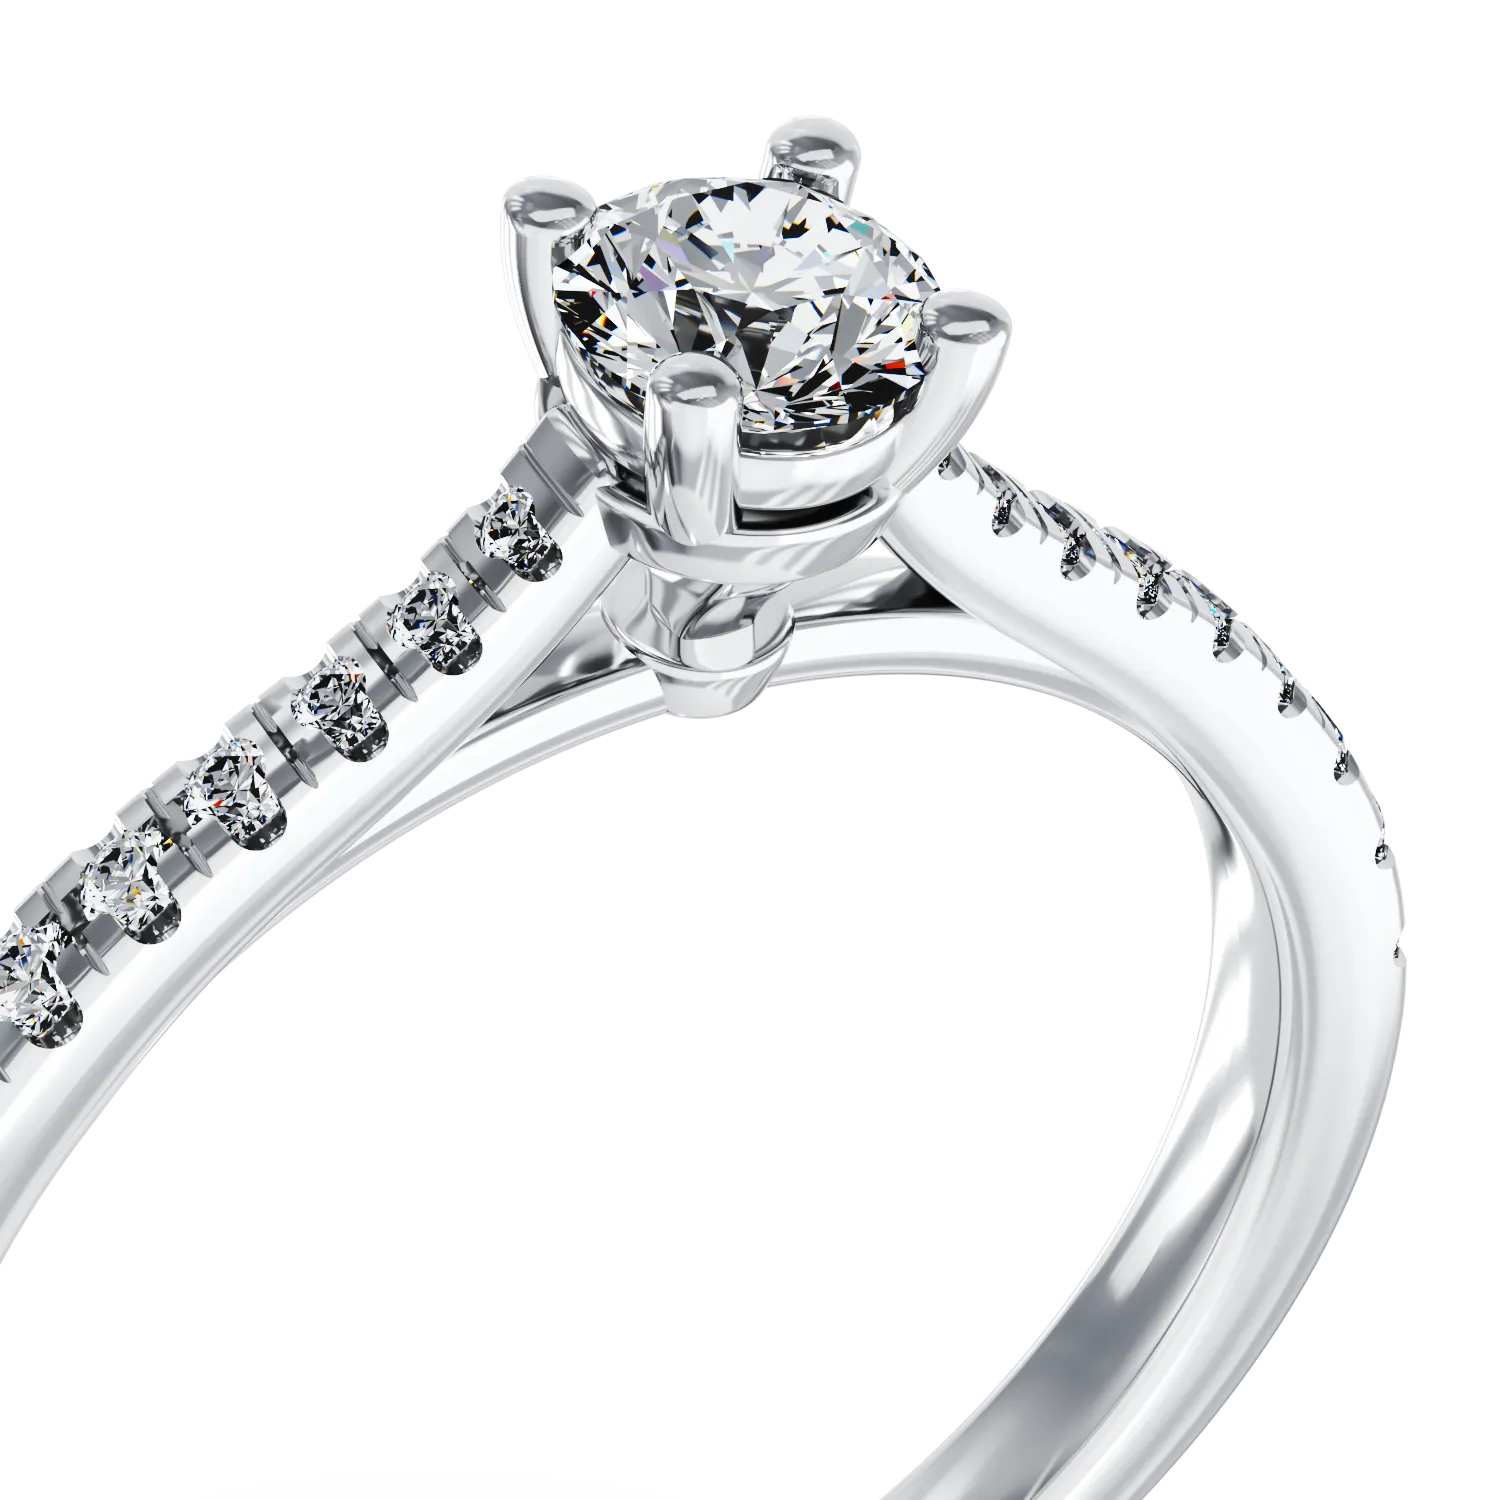 Eljegyzési gyűrű 18K-os fehér aranyból 0,24ct gyémánttal és 0,19ct gyémánttal. Gramm: 2,9